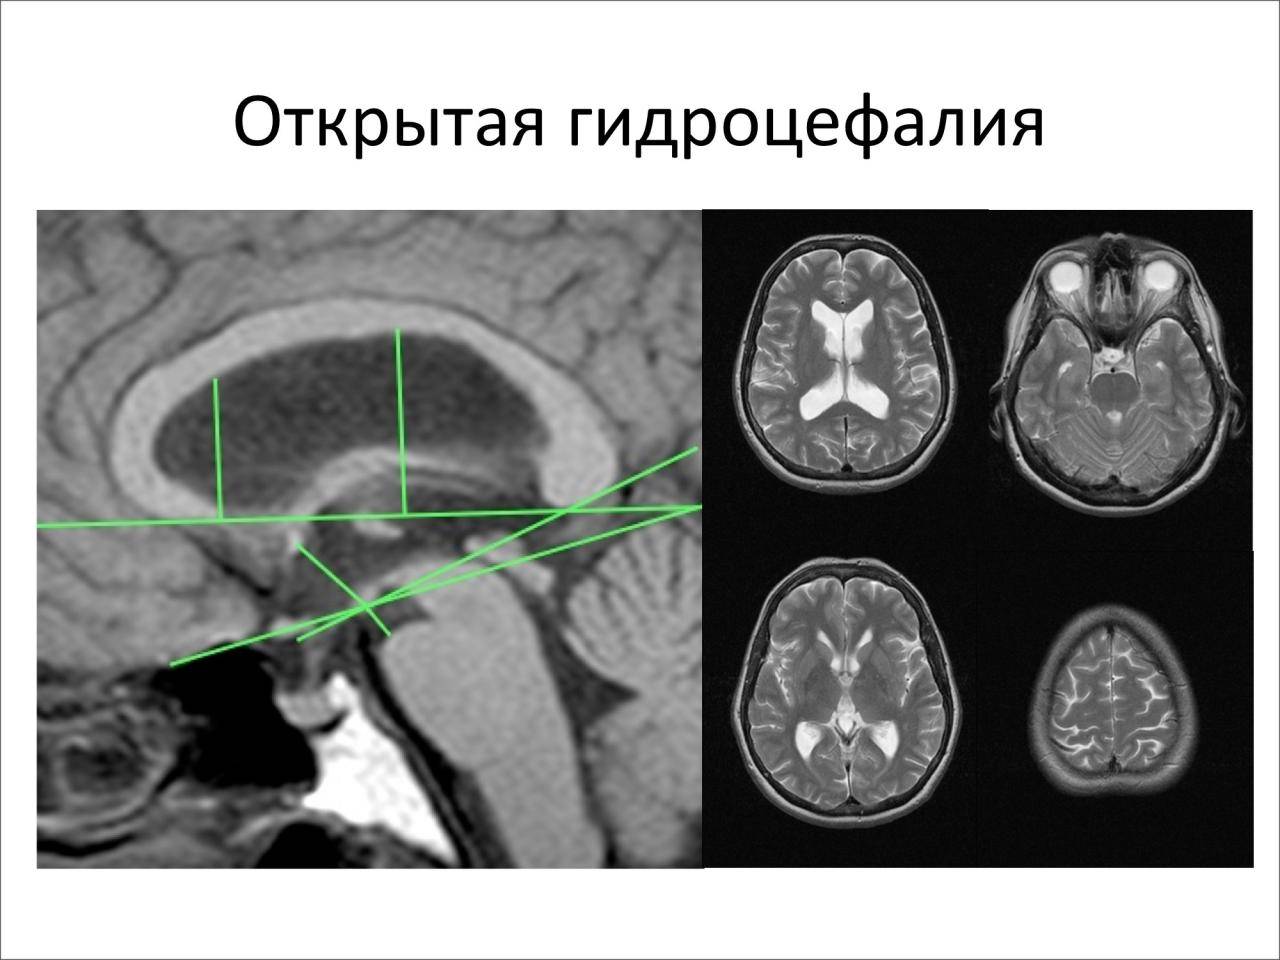 Гидроцефалия, органическое поражение мозга, понятие гидроцефалии формы гидроцефалии этиология